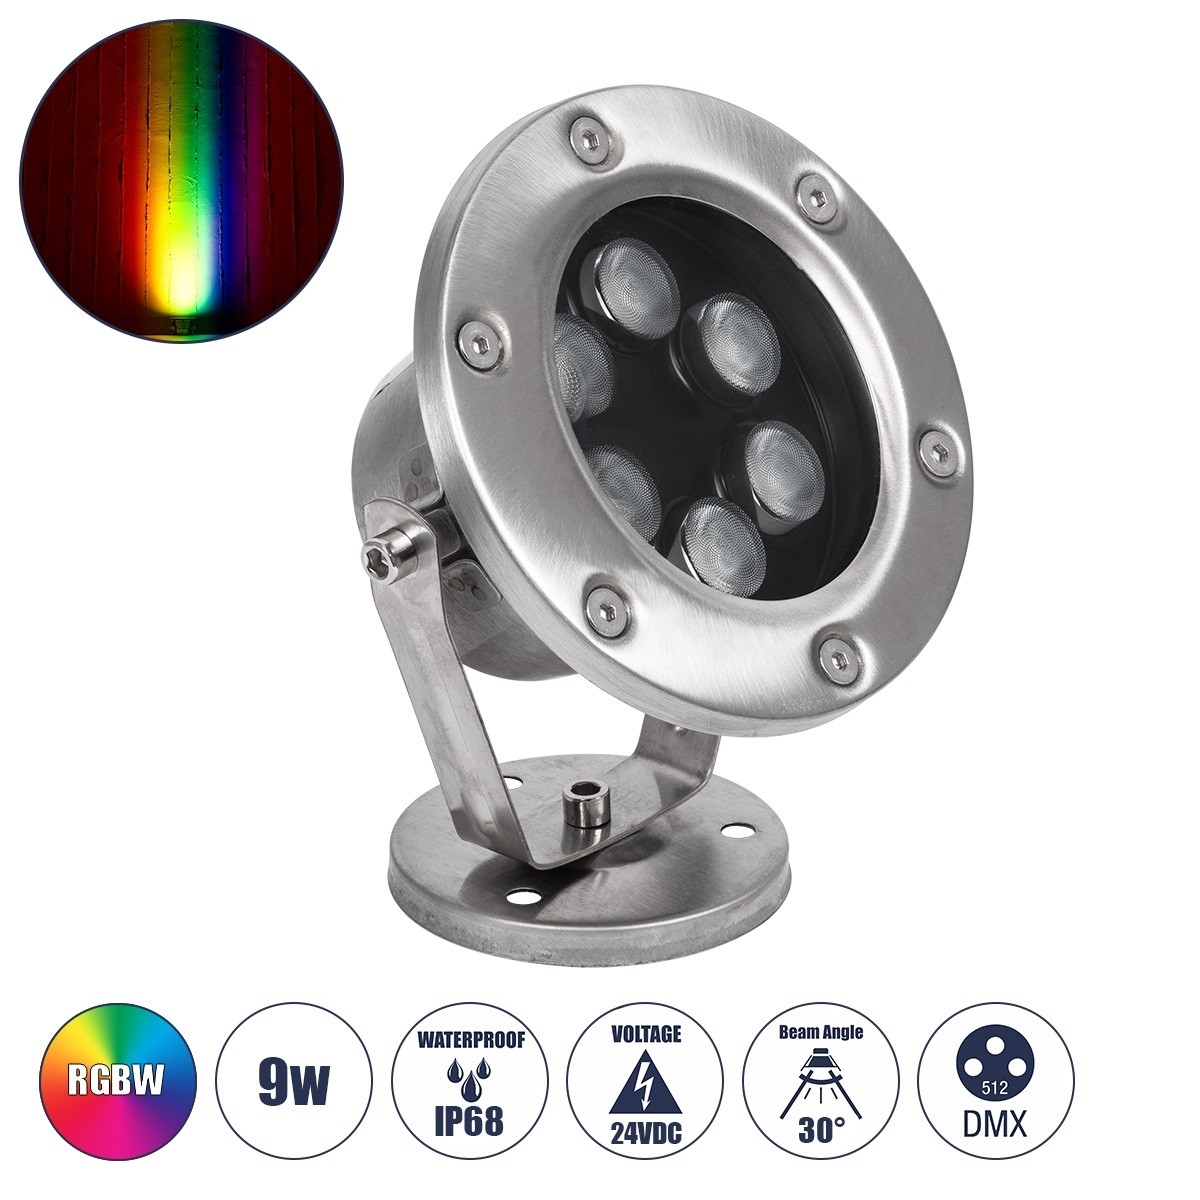 LED Φωτιστικό Υποβρύχιο Σποτ Ειδικό για Σιντριβάνια FINA 9W RGBW DMX512IP68 Φ12 x Υ14cm Ανοξείδωτο Ατσάλι 90677